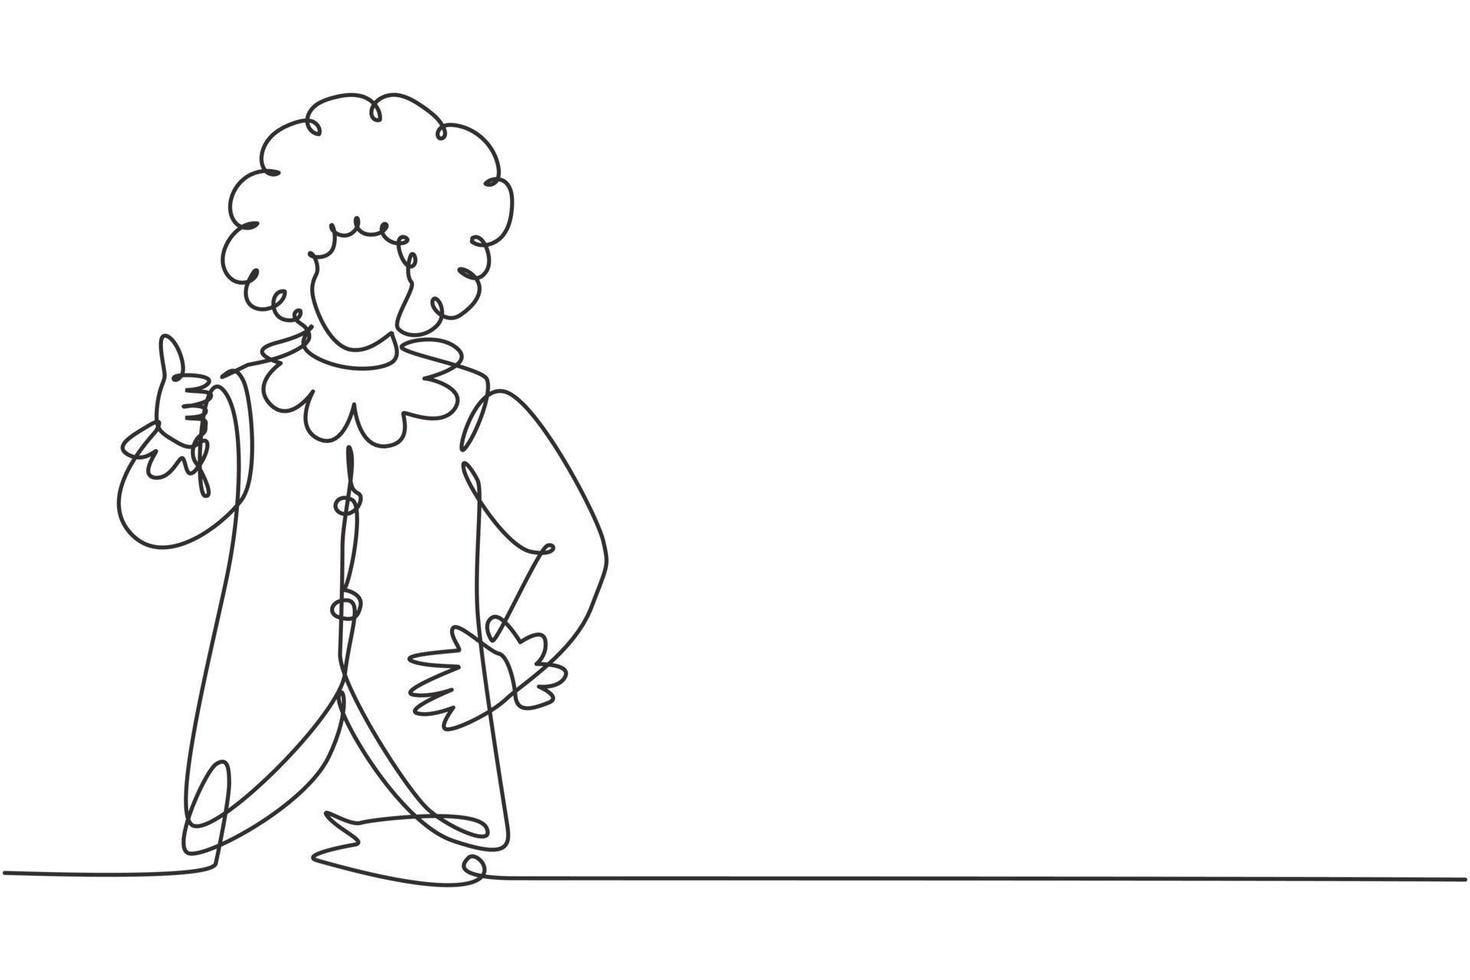 linha única contínua desenhando um palhaço com gesto de polegar para cima, usando uma peruca e uma maquiagem de rosto sorridente, entretendo as crianças em um aniversário festivo. ilustração em vetor desenho gráfico dinâmica de uma linha